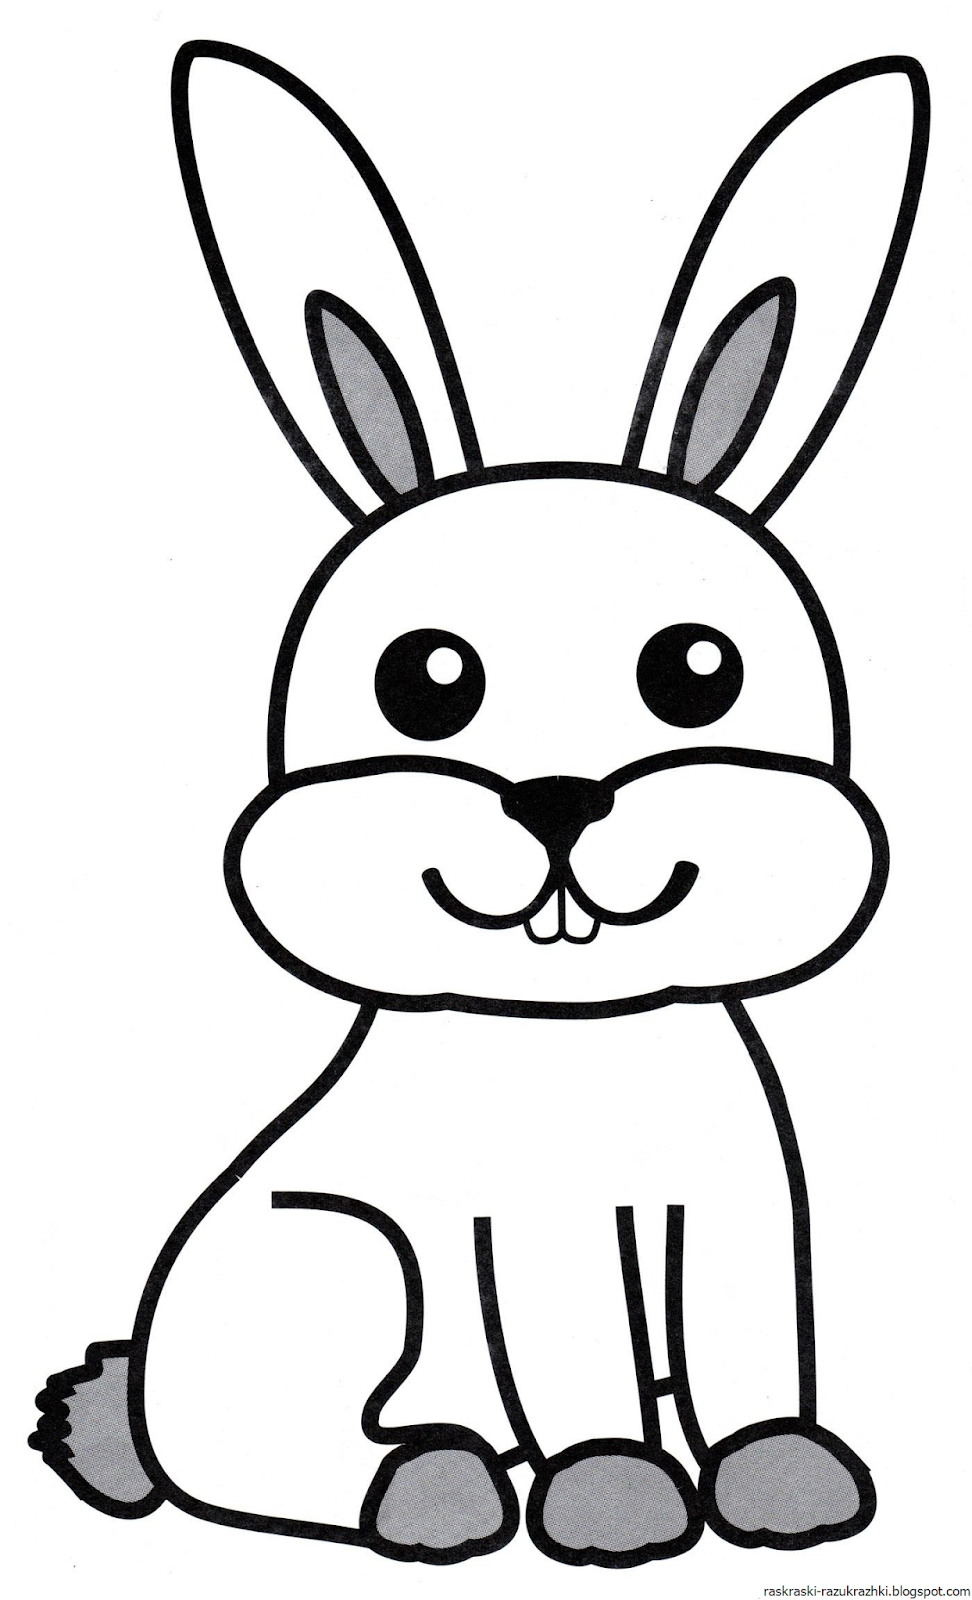 Раскраска заяц: векторные изображения и иллюстрации, которые можно скачать бесплатно | Freepik